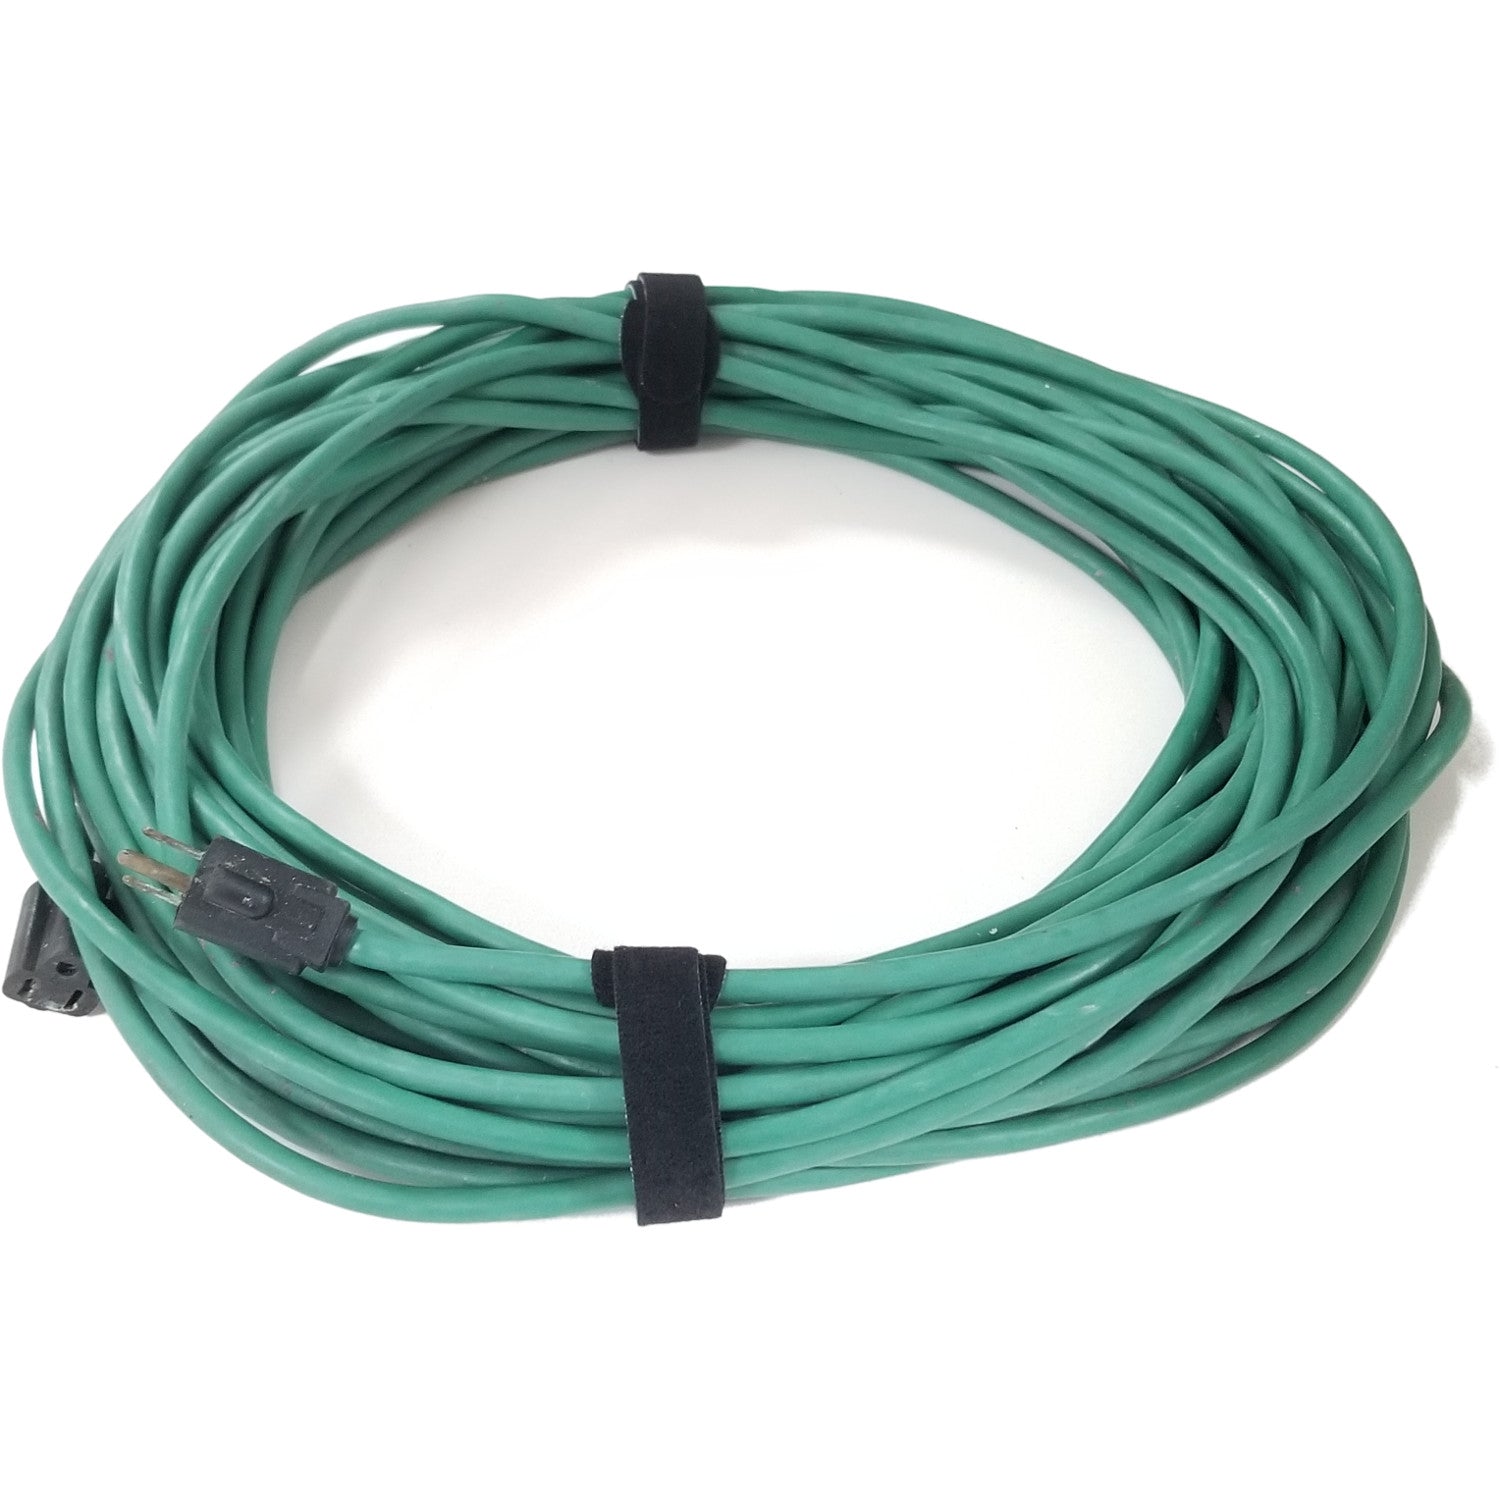 Reusable Cable Ties - Jumbo Size 3/4" x 16"